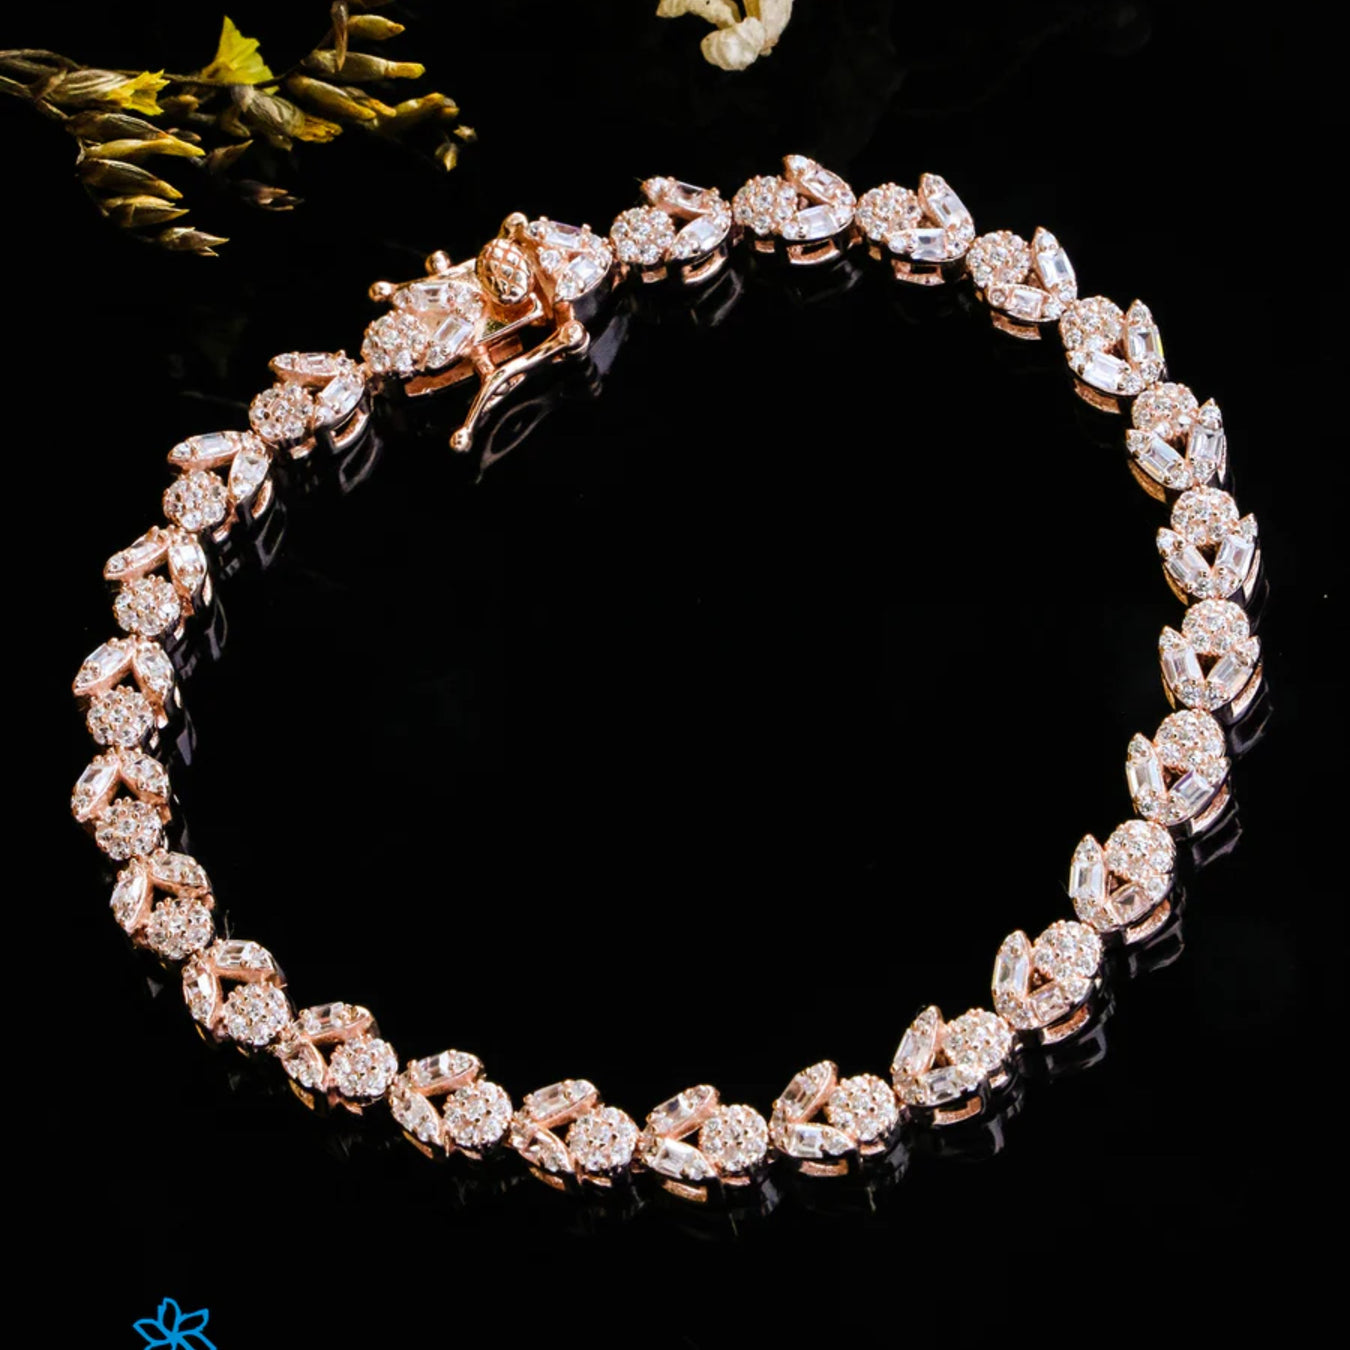 La Vie en Rose - Rose Gold Silver Jewellery